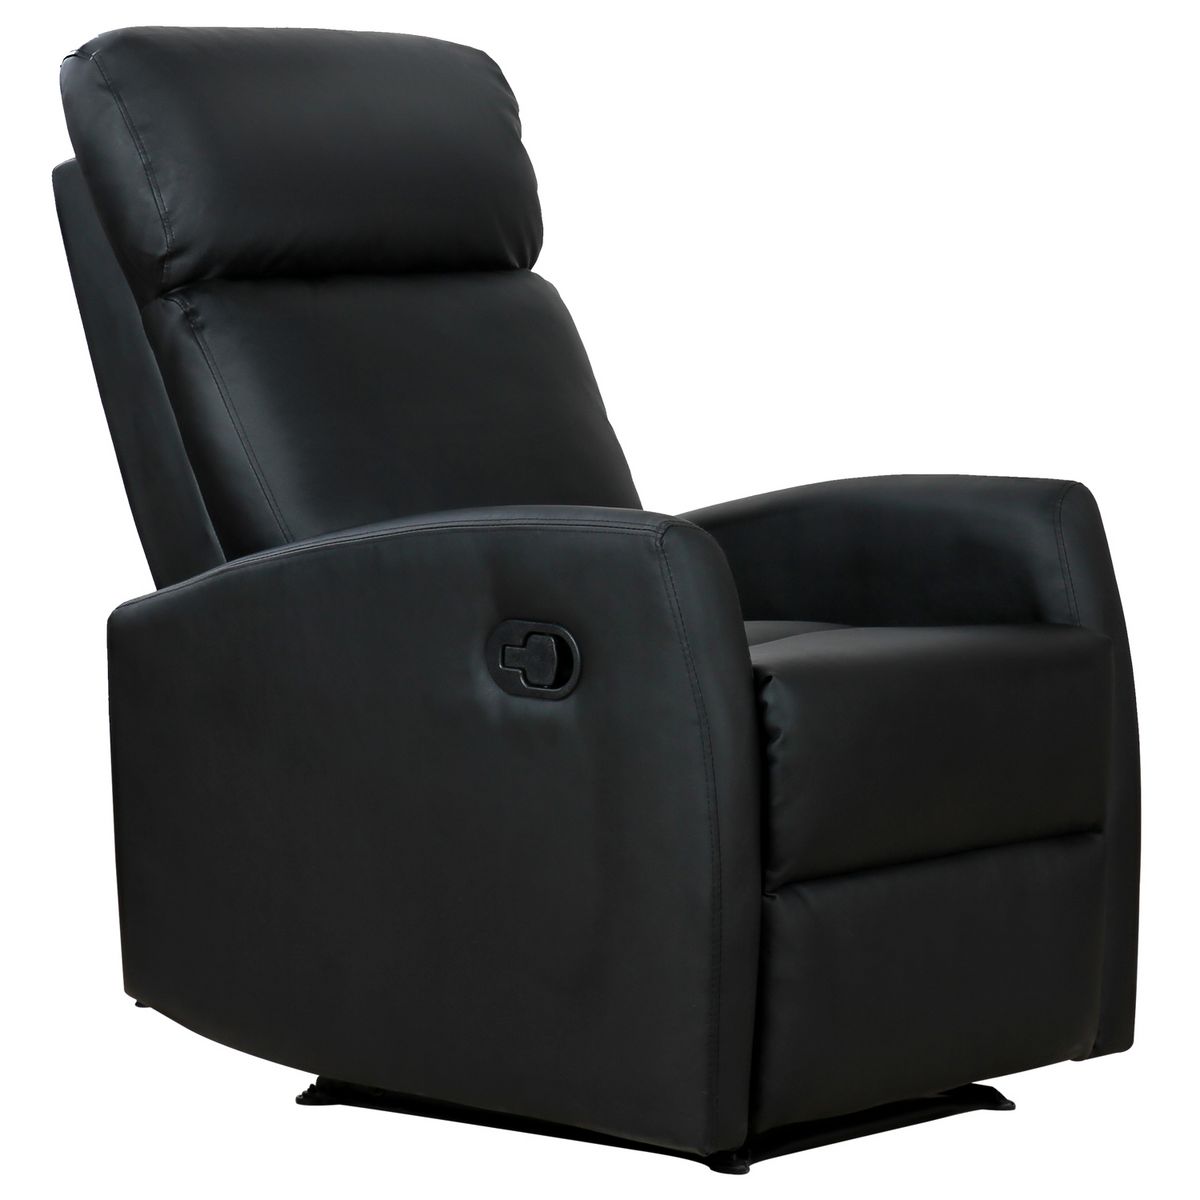 HOMCOM Fauteuil de relaxation inclinable 170° avec repose-pied ajustable revêtement synthétique noir